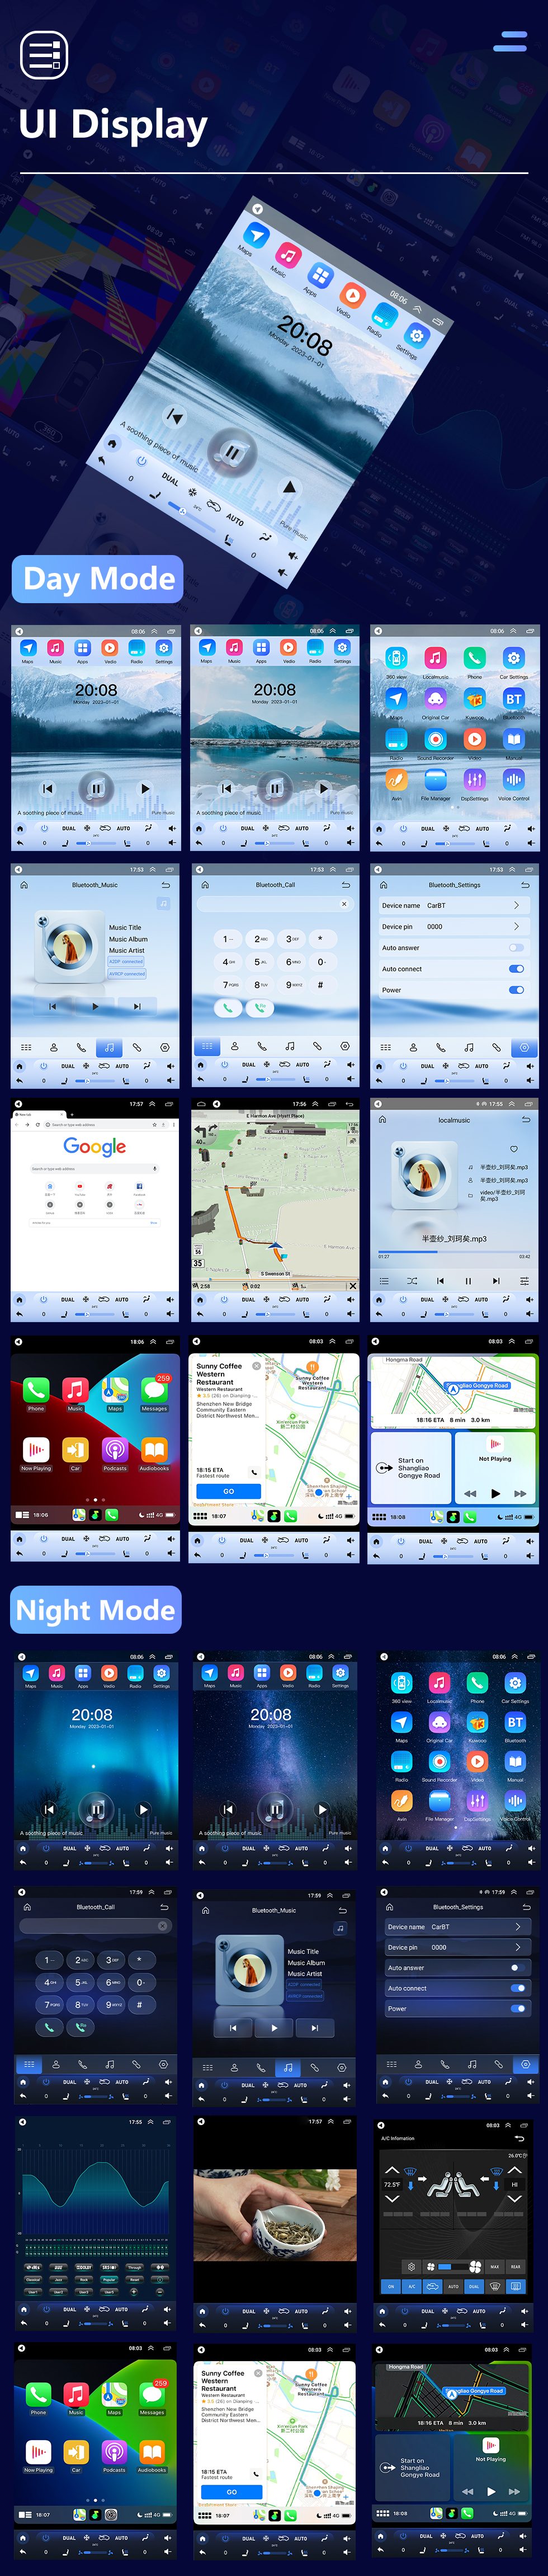 Seicane OEM 12,1 polegadas Android 10.0 para 2014 2015 Jeep Grand Cherokee SRT Rádio Sistema de Navegação GPS HD Touchscreen Bluetooth Carplay